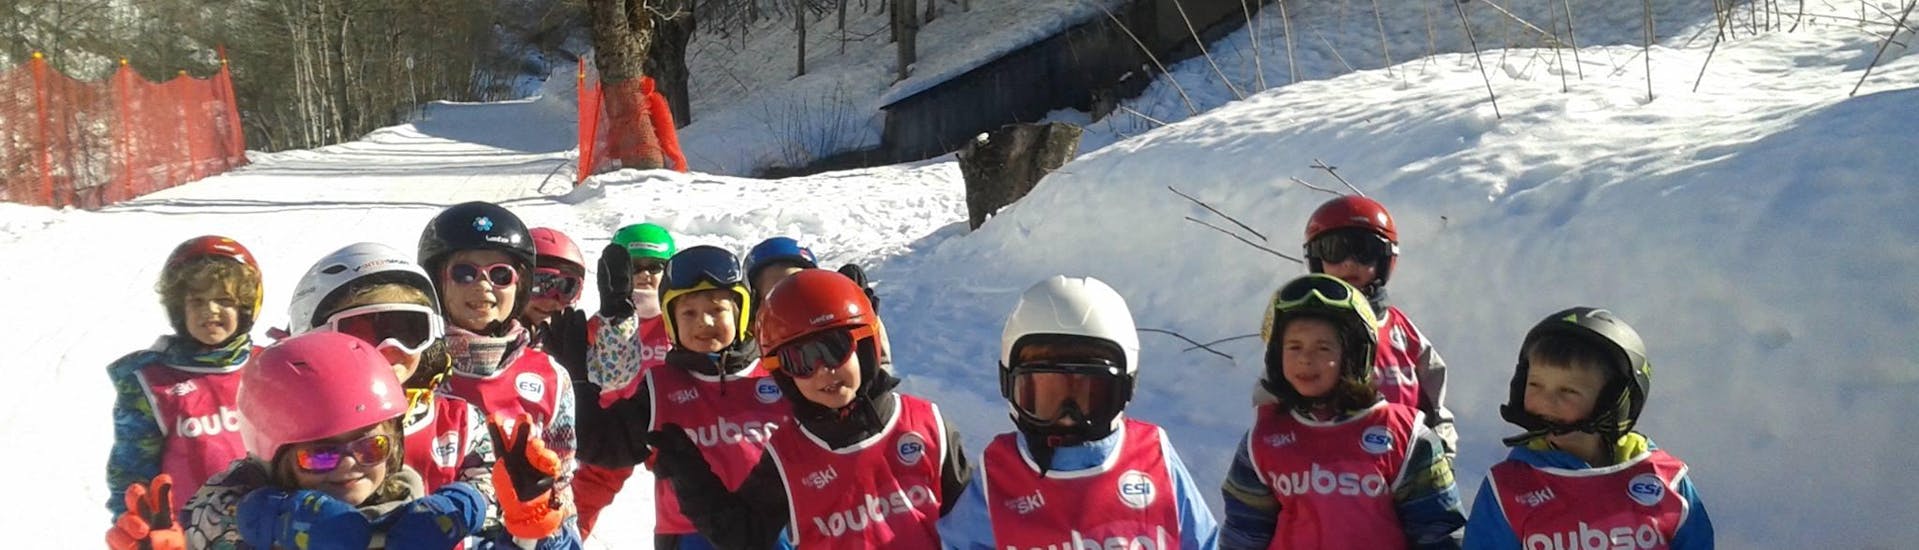 Los niños están parados en medio de las pistas durante sus clases de esquí para niños (5-15 años) - Mañana con la escuela de esquí ESI Ecoloski Barèges.